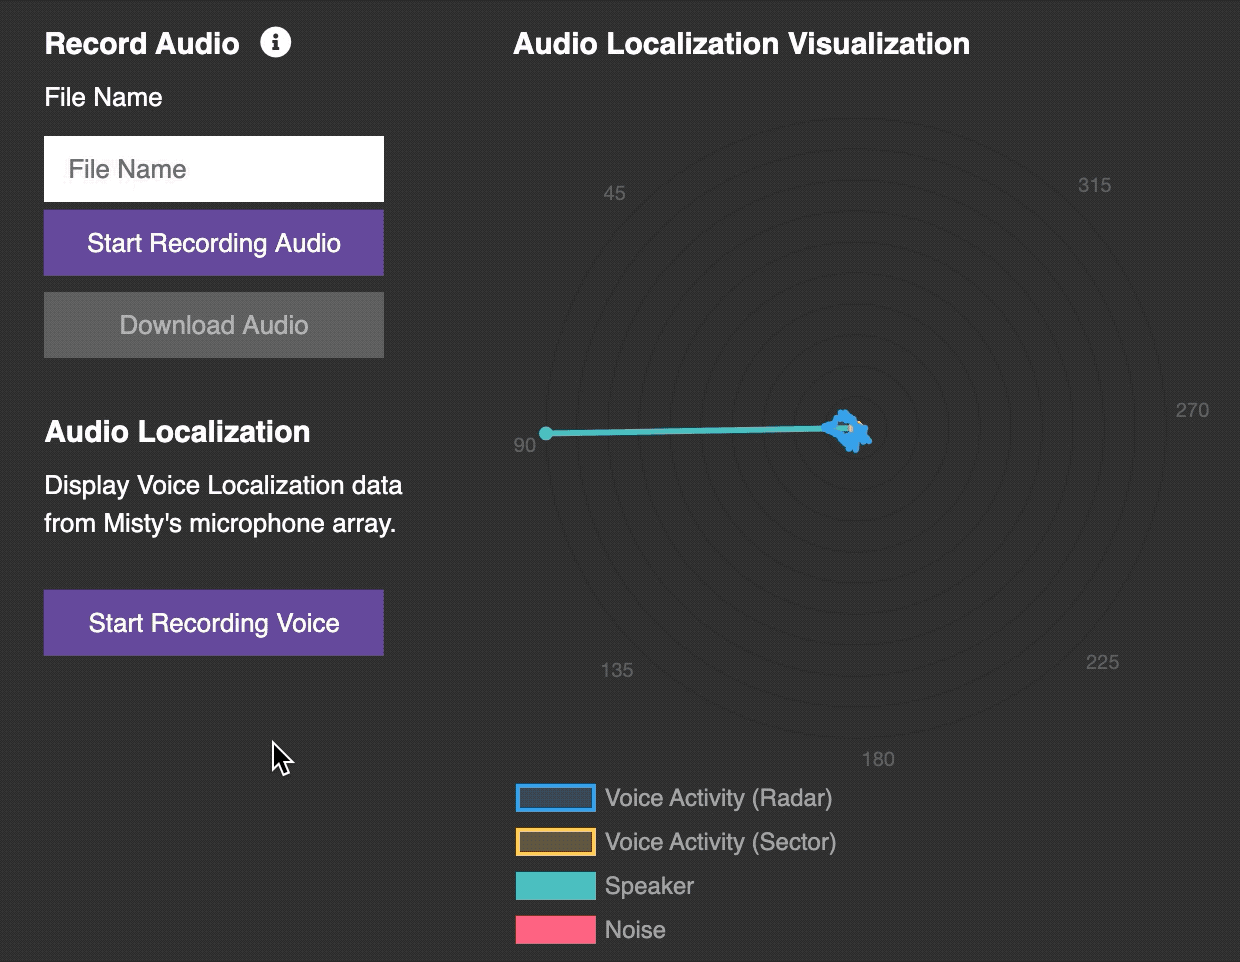 Command Center Audio Localization